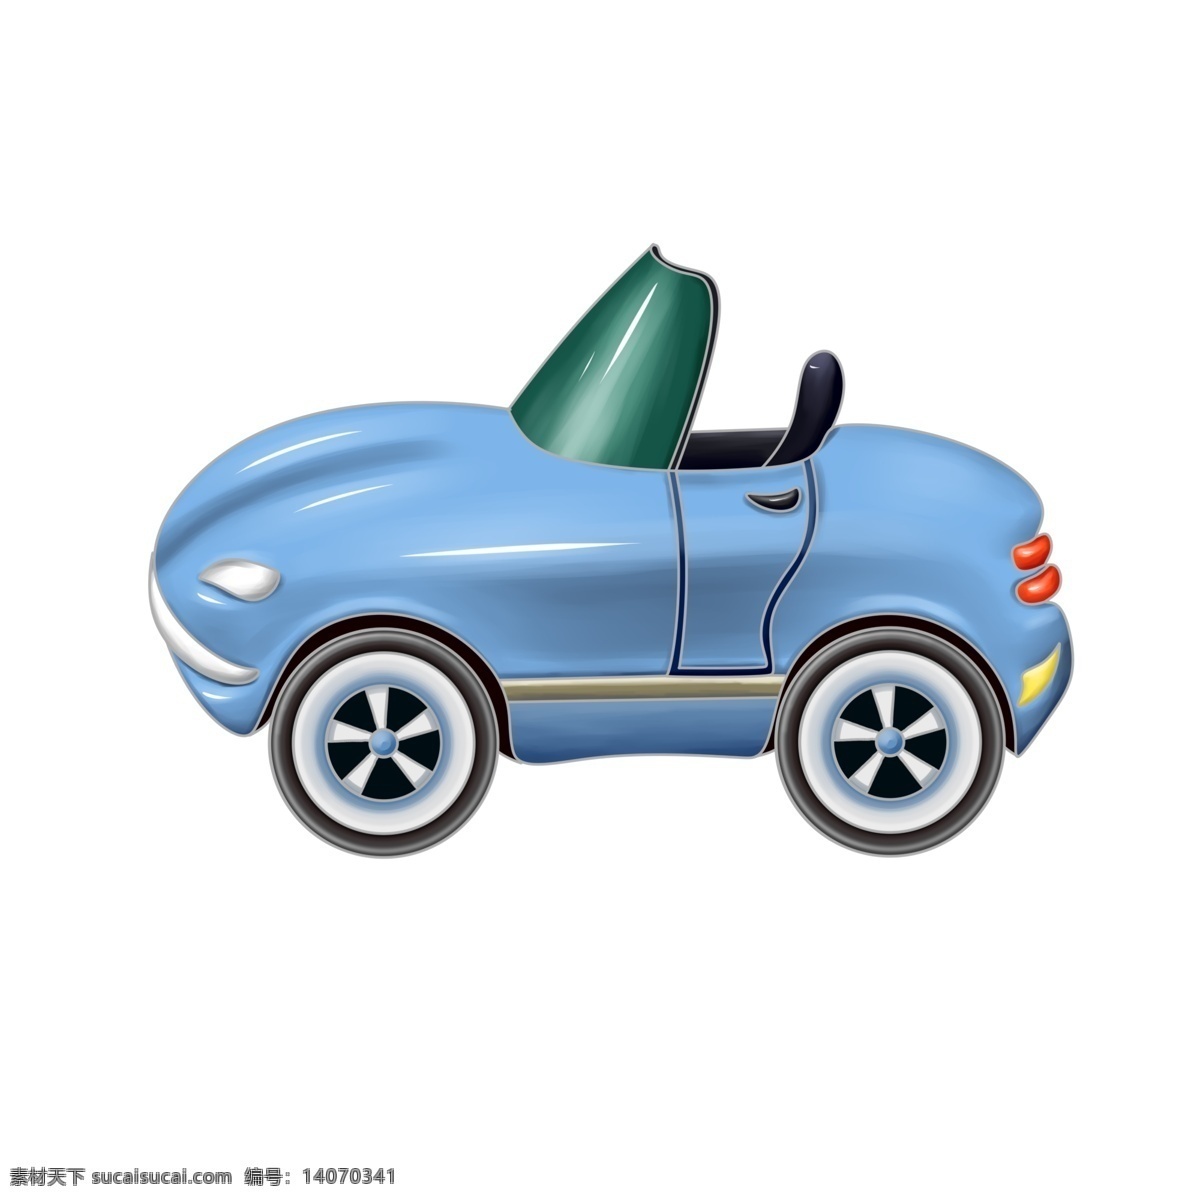 蓝色 汽车装饰 插画 蓝色的汽车 漂亮的汽车 精美汽车 国产汽车 创意汽车 立体汽车 卡通汽车